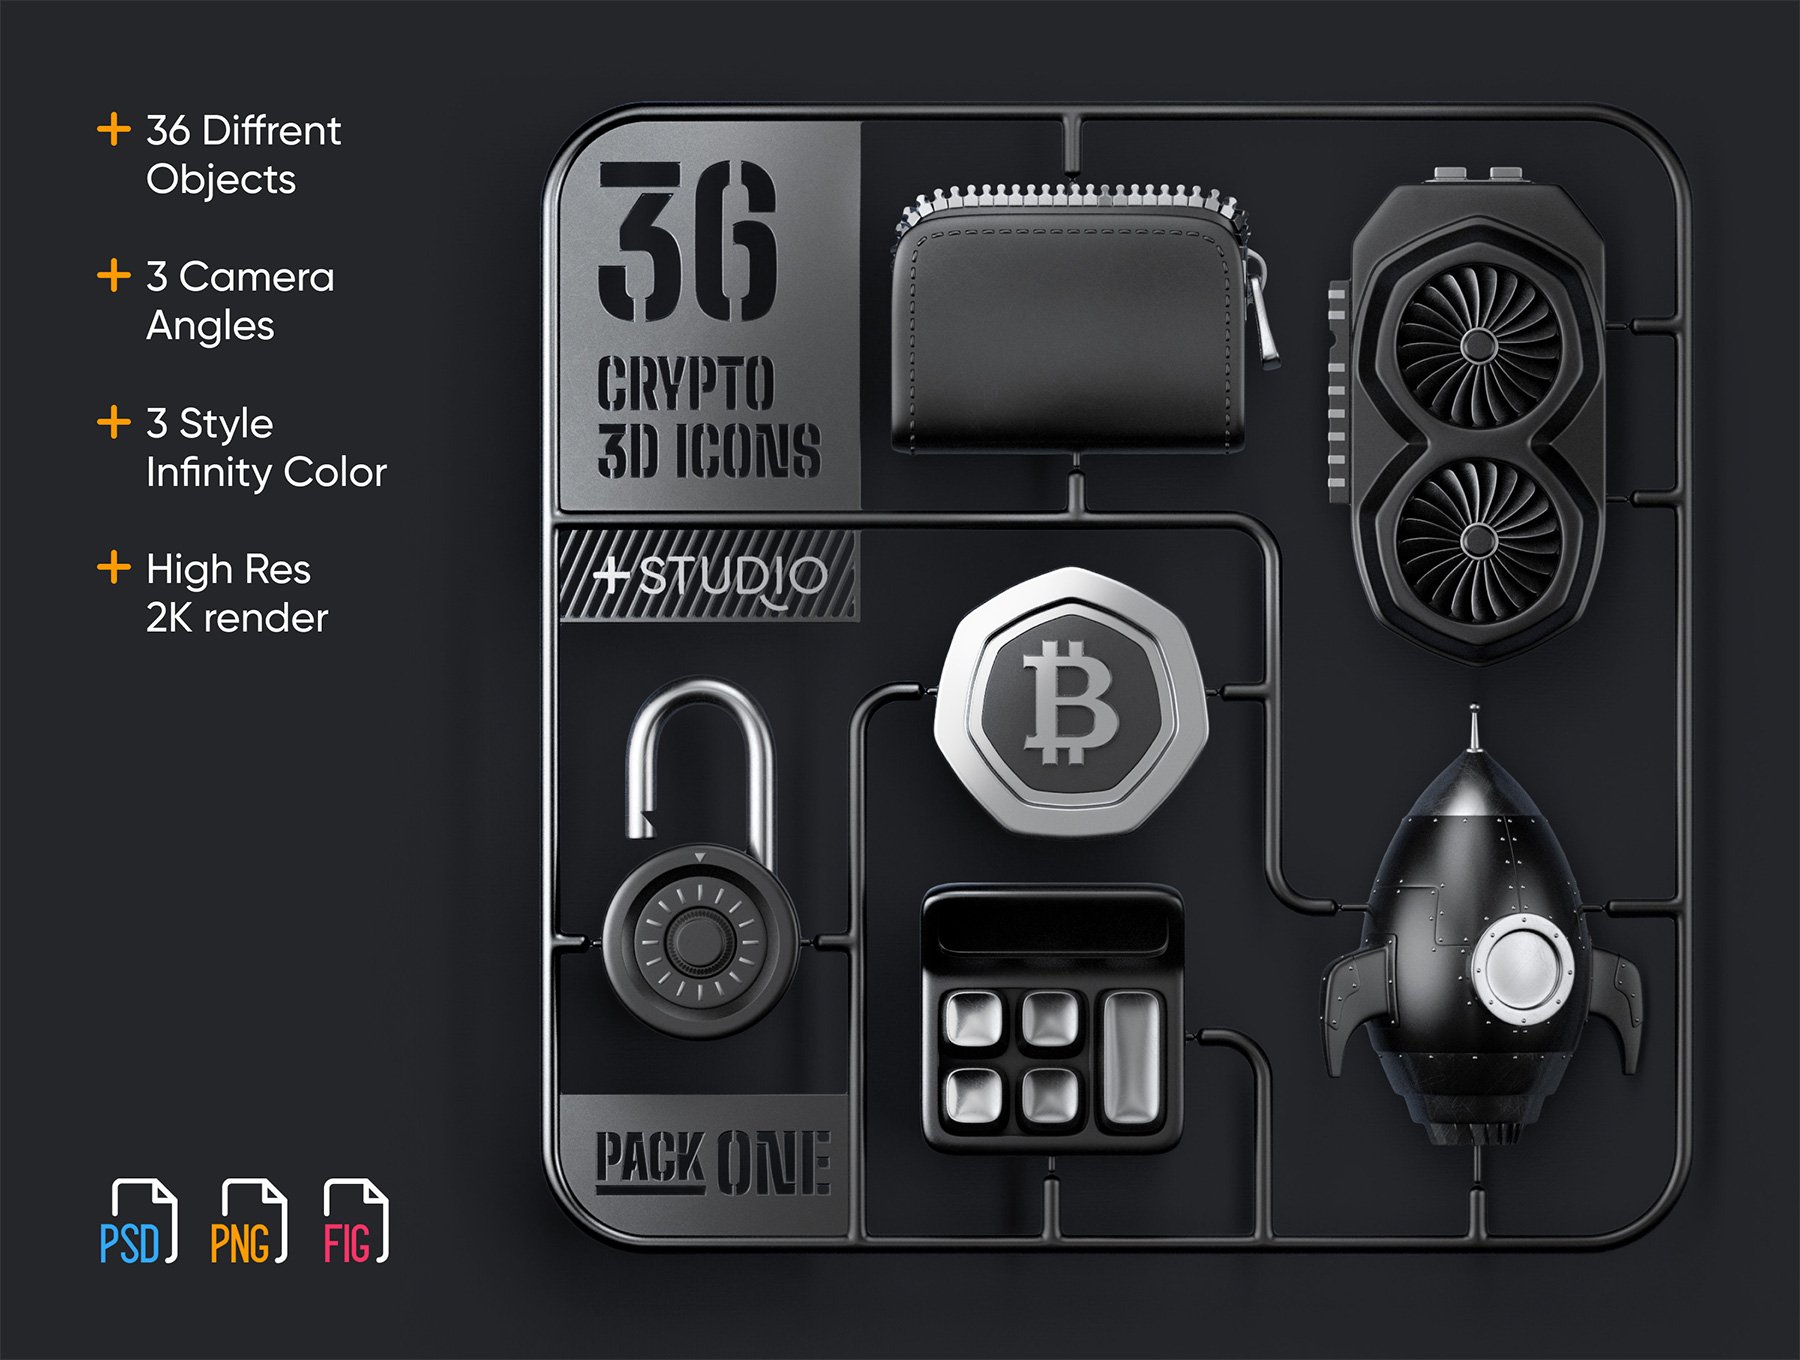 三维渲染加密钱包以太坊比特币虚拟货币主题3D插画图标合辑 36 Crypto 3D icons 图标素材 第1张